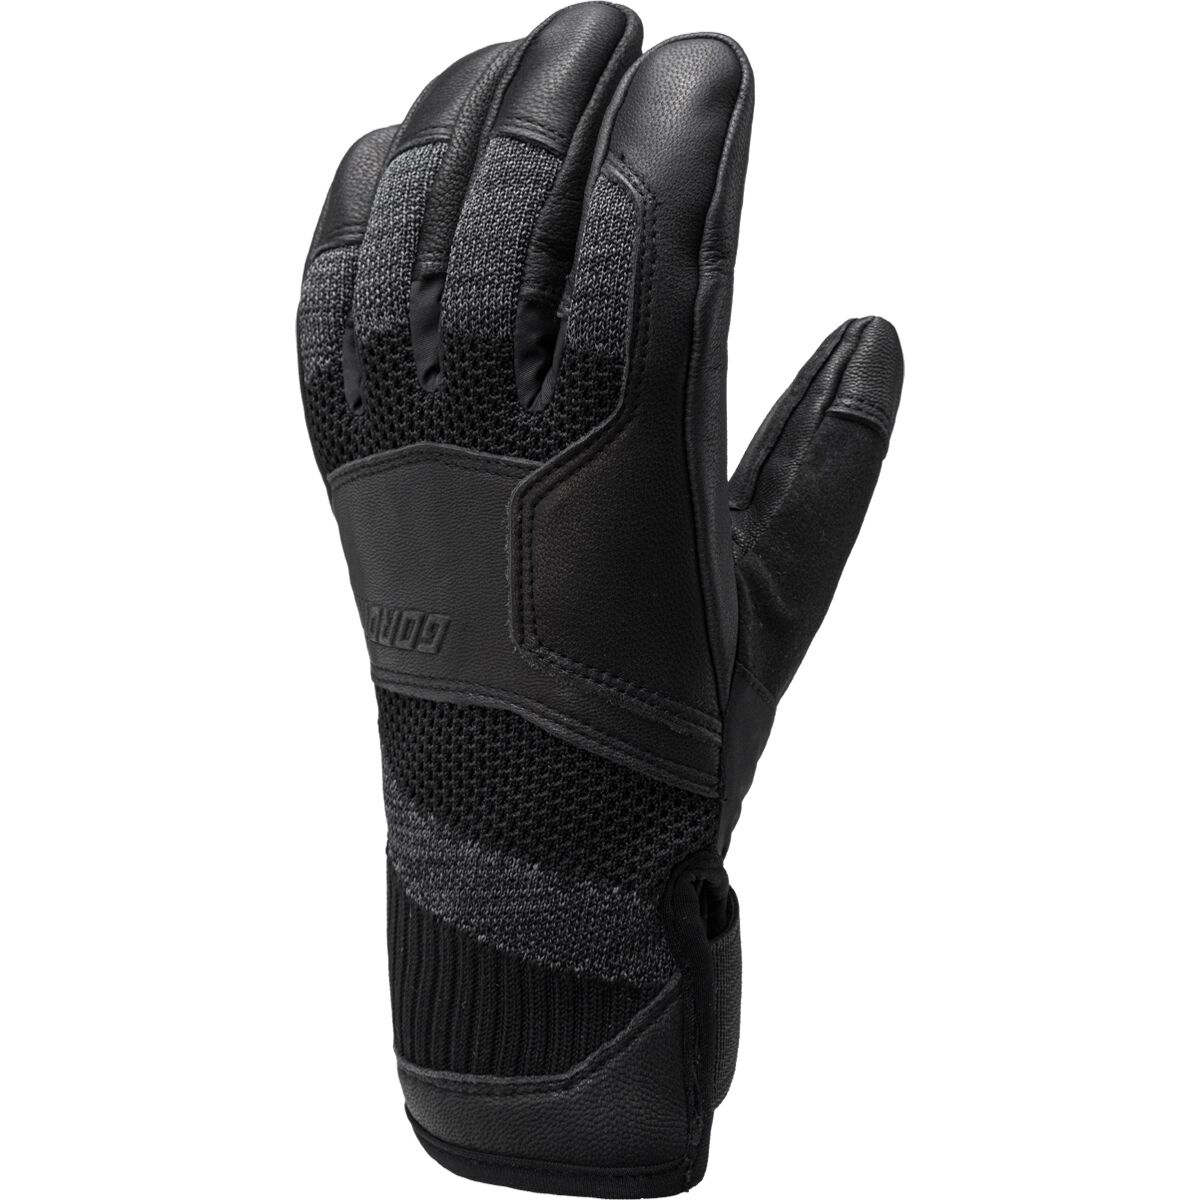 Gordini Camber Glove - Men's Black